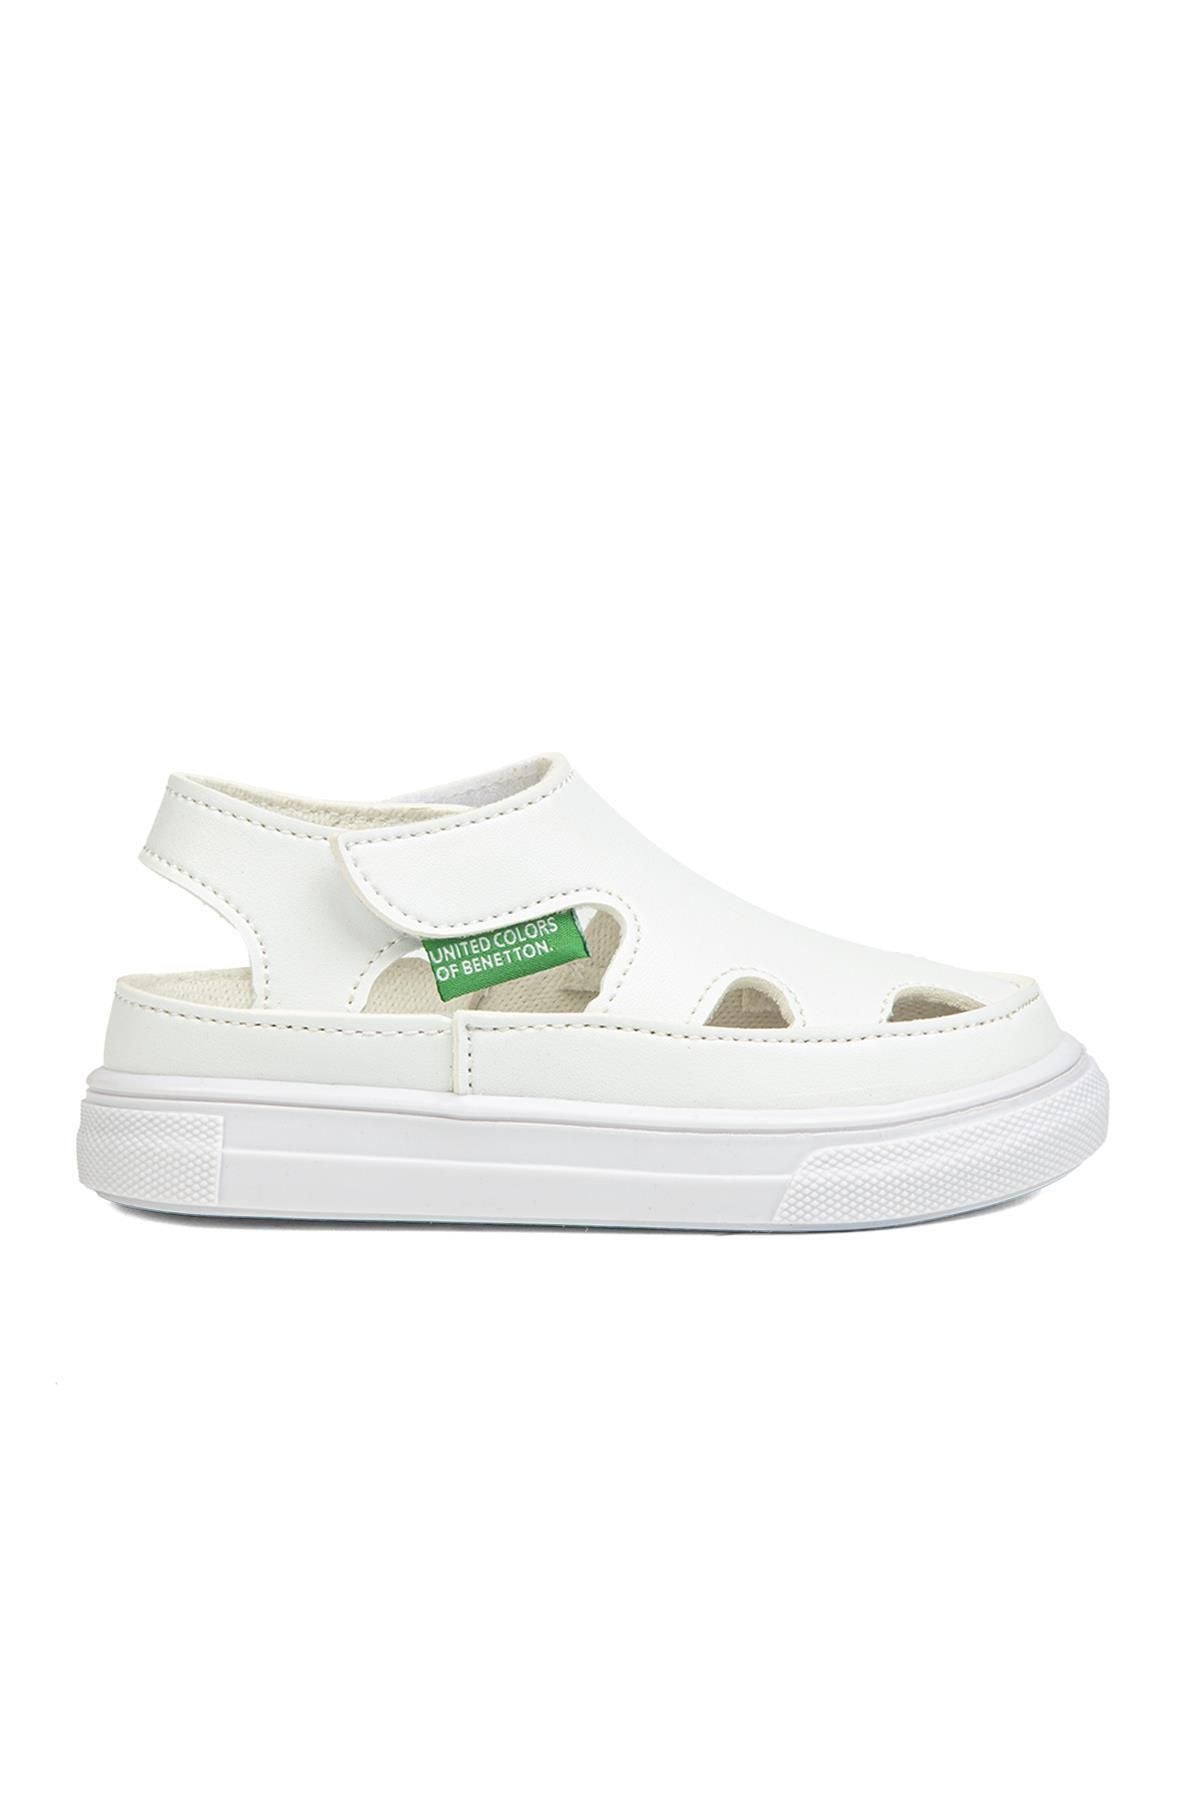 Benetton ® | BN-1246- Beyaz - Çocuk Sandalet